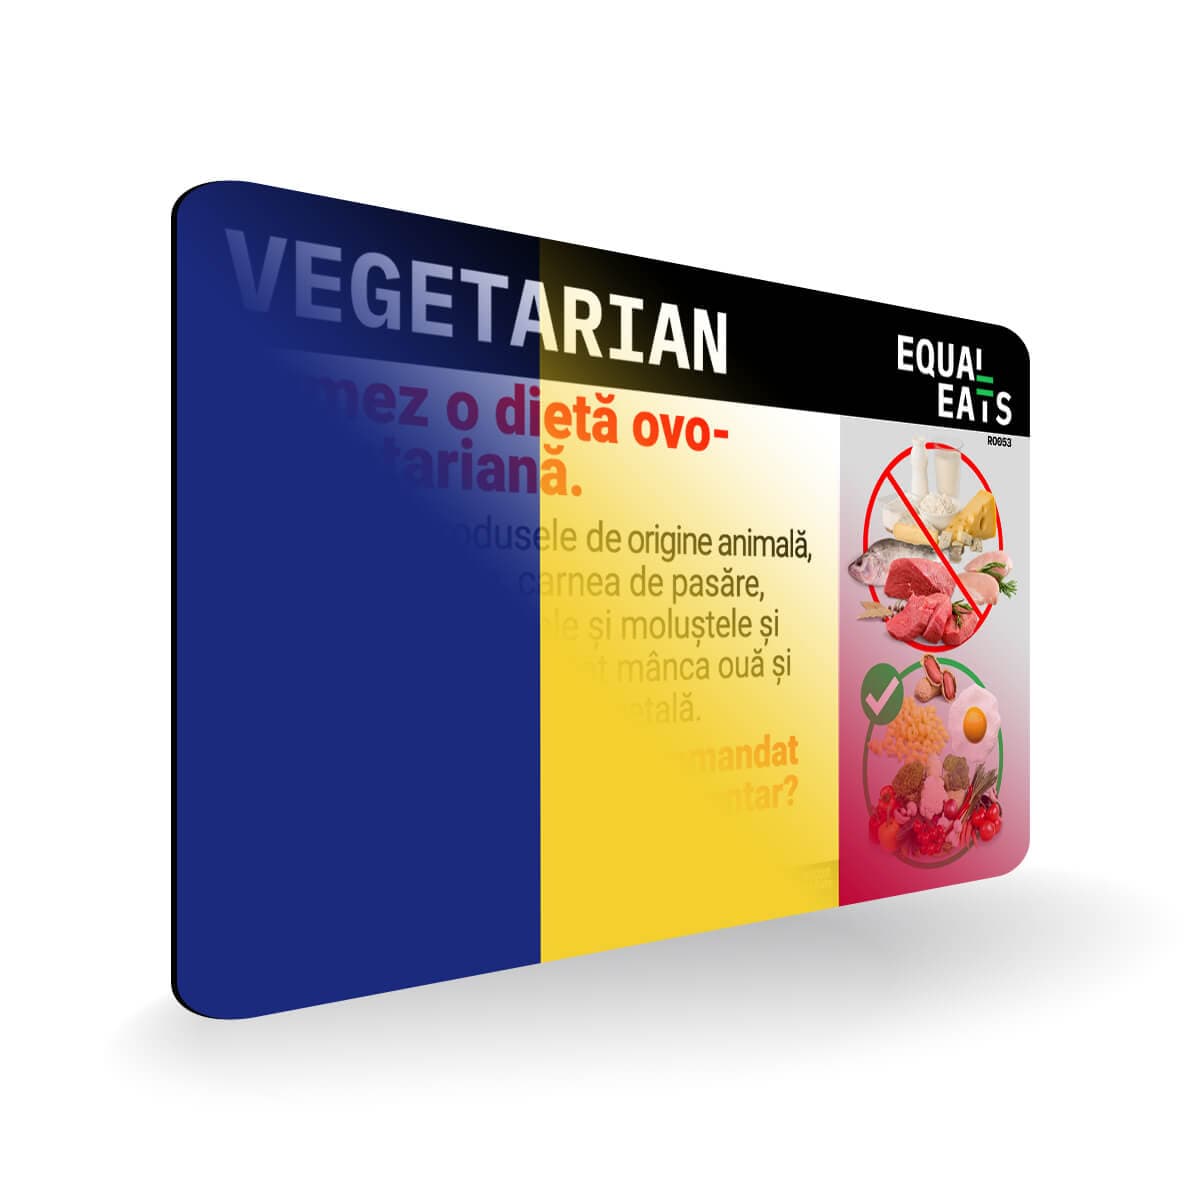 Ovo Vegetarian in Romanian. Card for Vegetarian in Romania